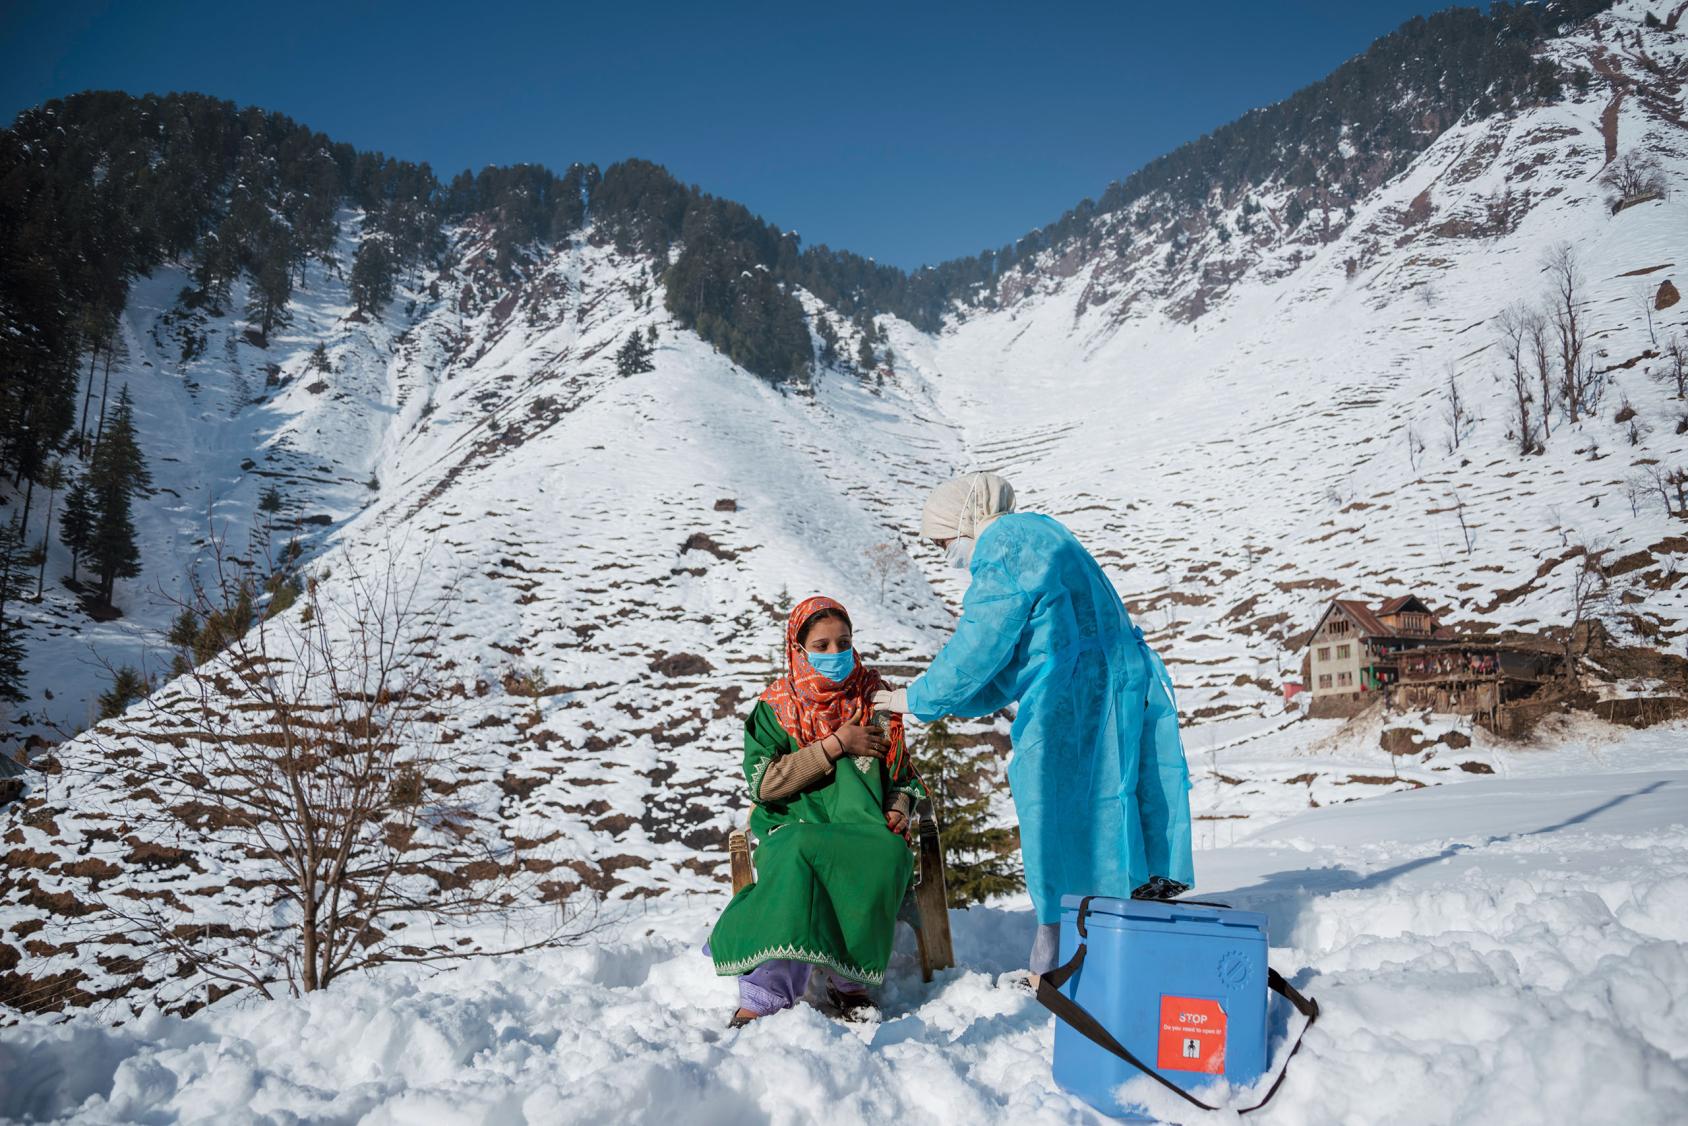 Une femme vêtue d’une robe verte se fait vacciner contre la COVID-19, près d’une glacière, par une agente de santé vêtue d’une blouse de protection bleue, au sommet d'une montagne enneigée, en Inde.